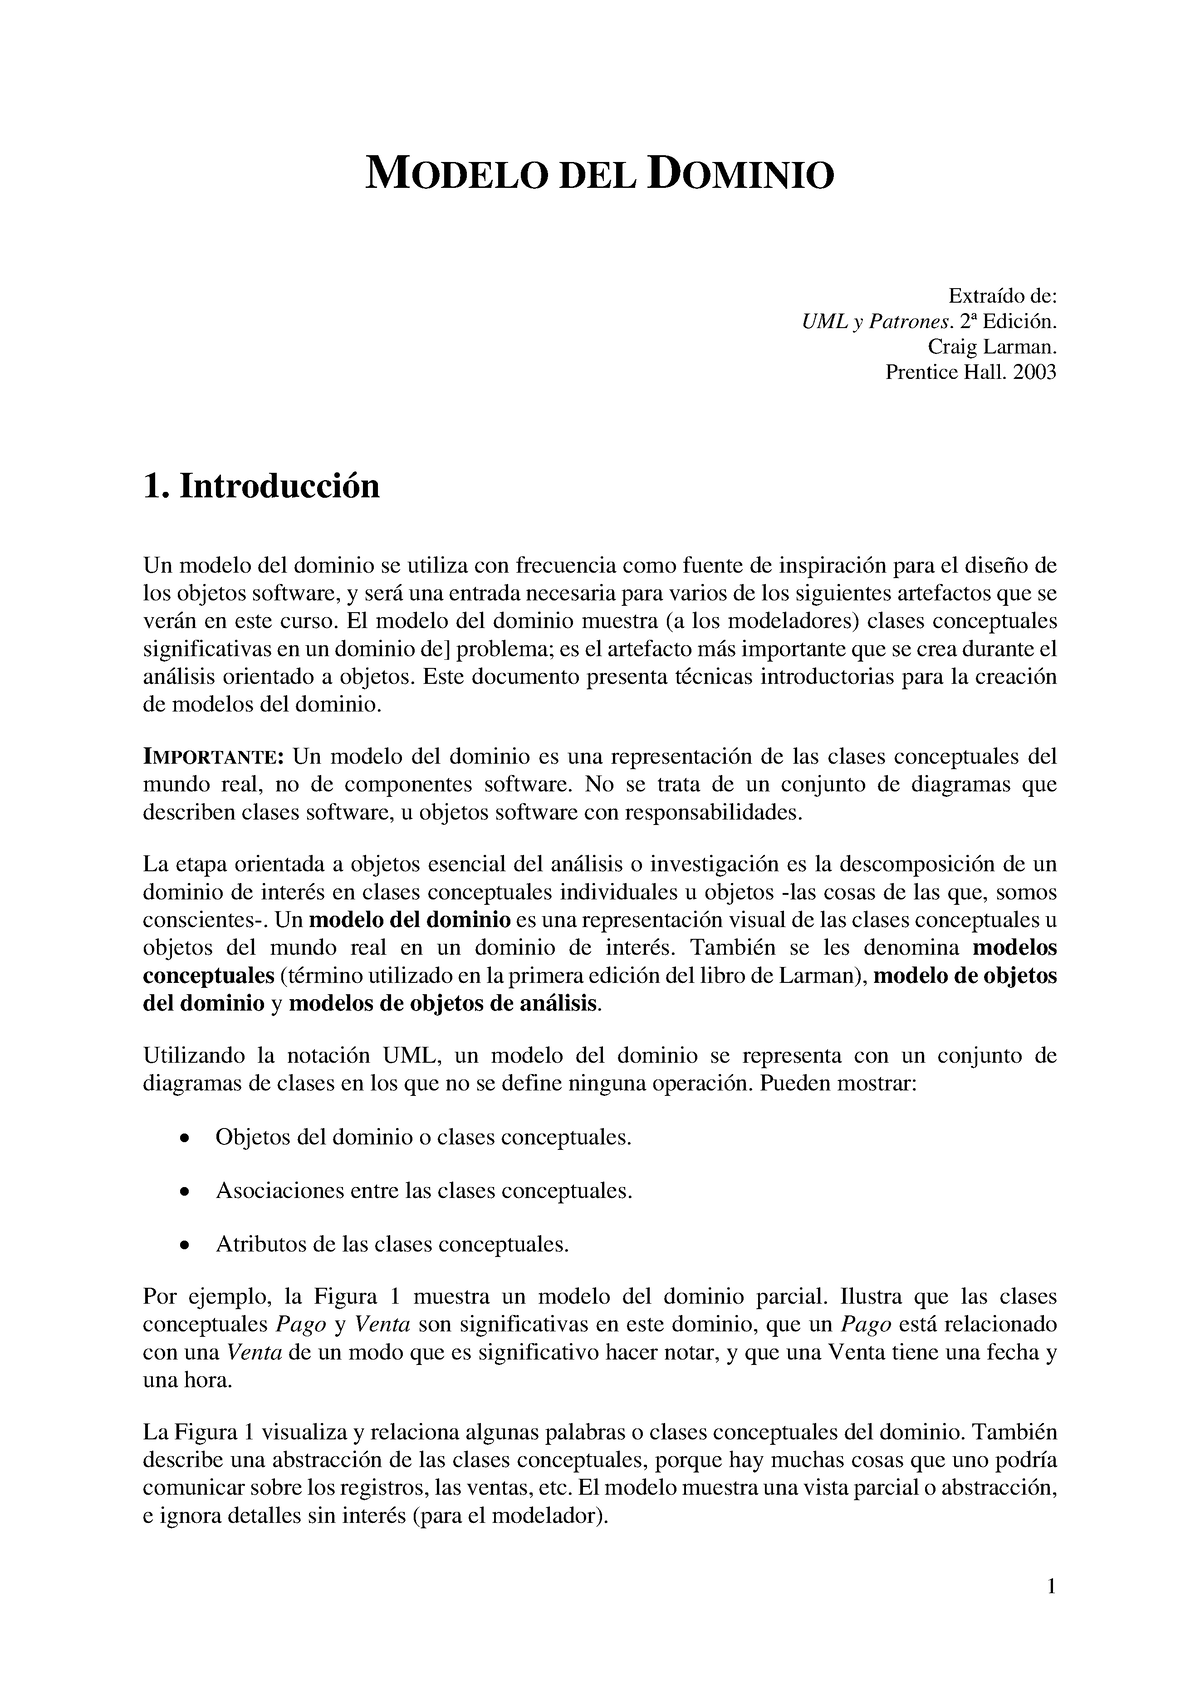 Modelo Dominio Modelo Del Dominio Extraído De Uml Y Patrones 2ª Edición Craig Larman 3674